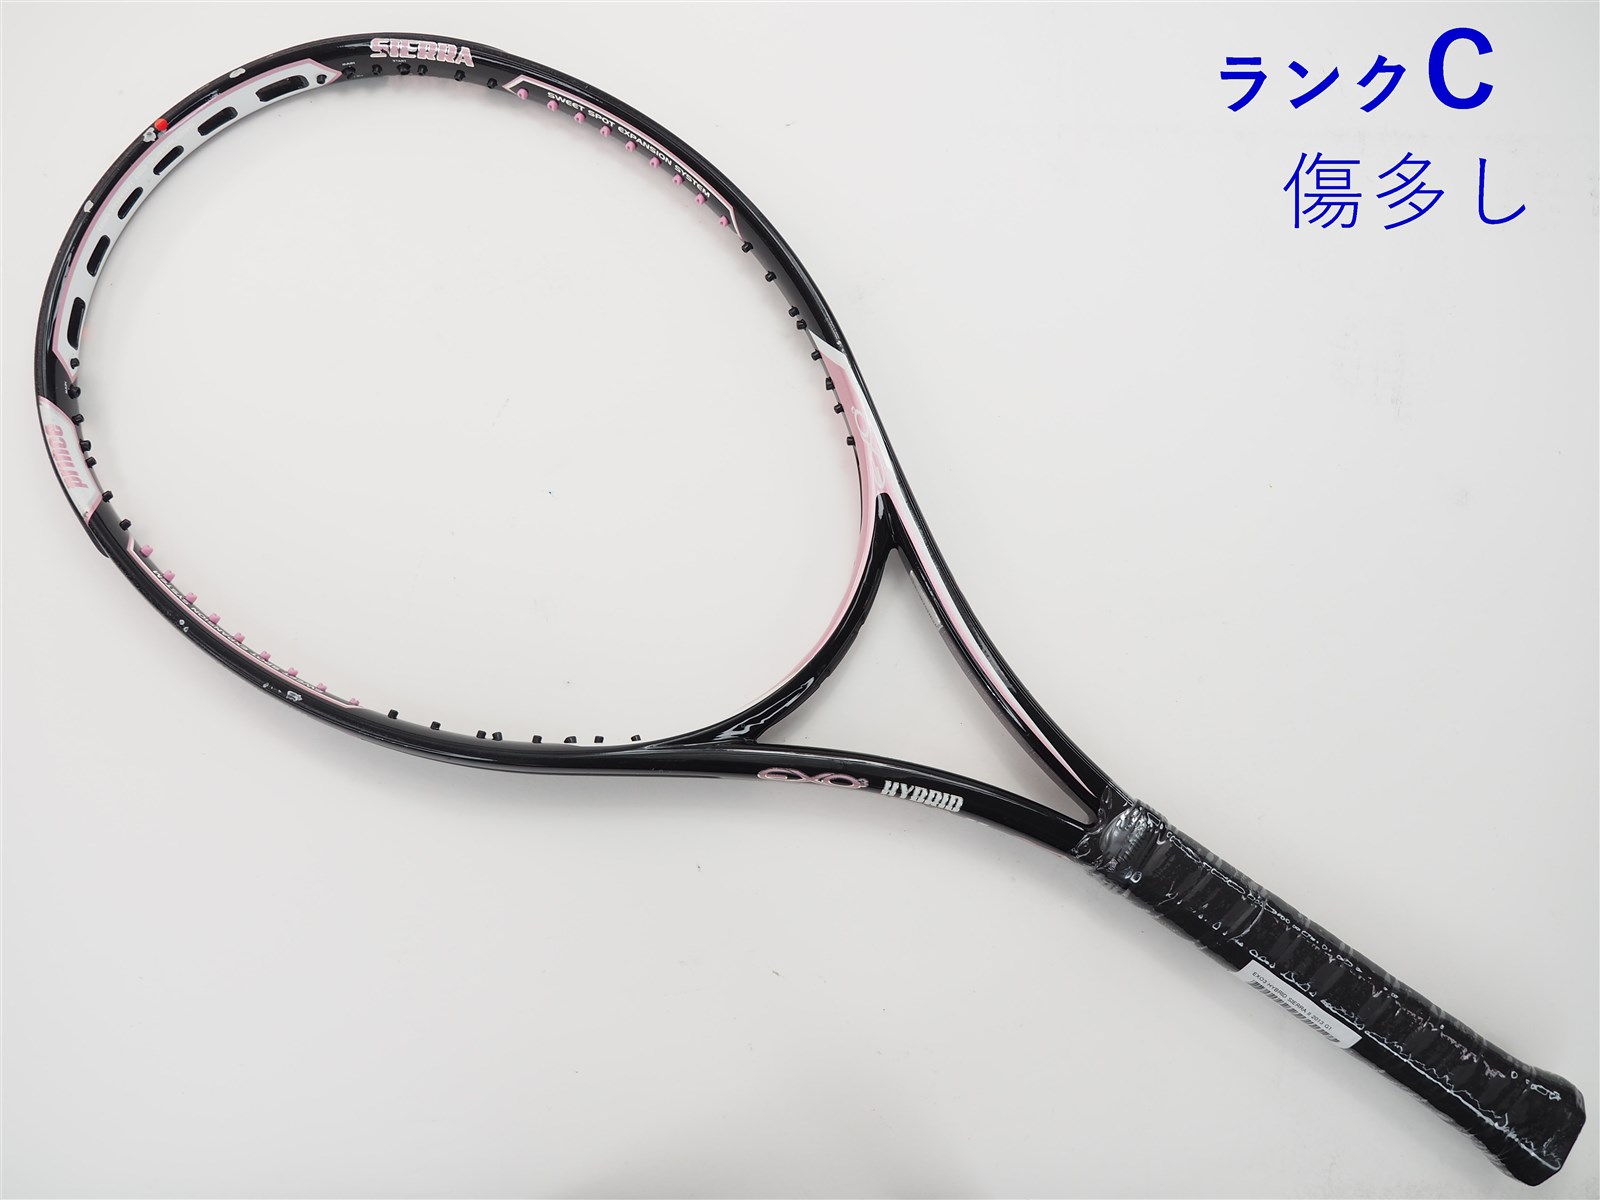 人気No.1/本体 テニスラケット EXO ラケット(硬式用) SIERRA - prince 